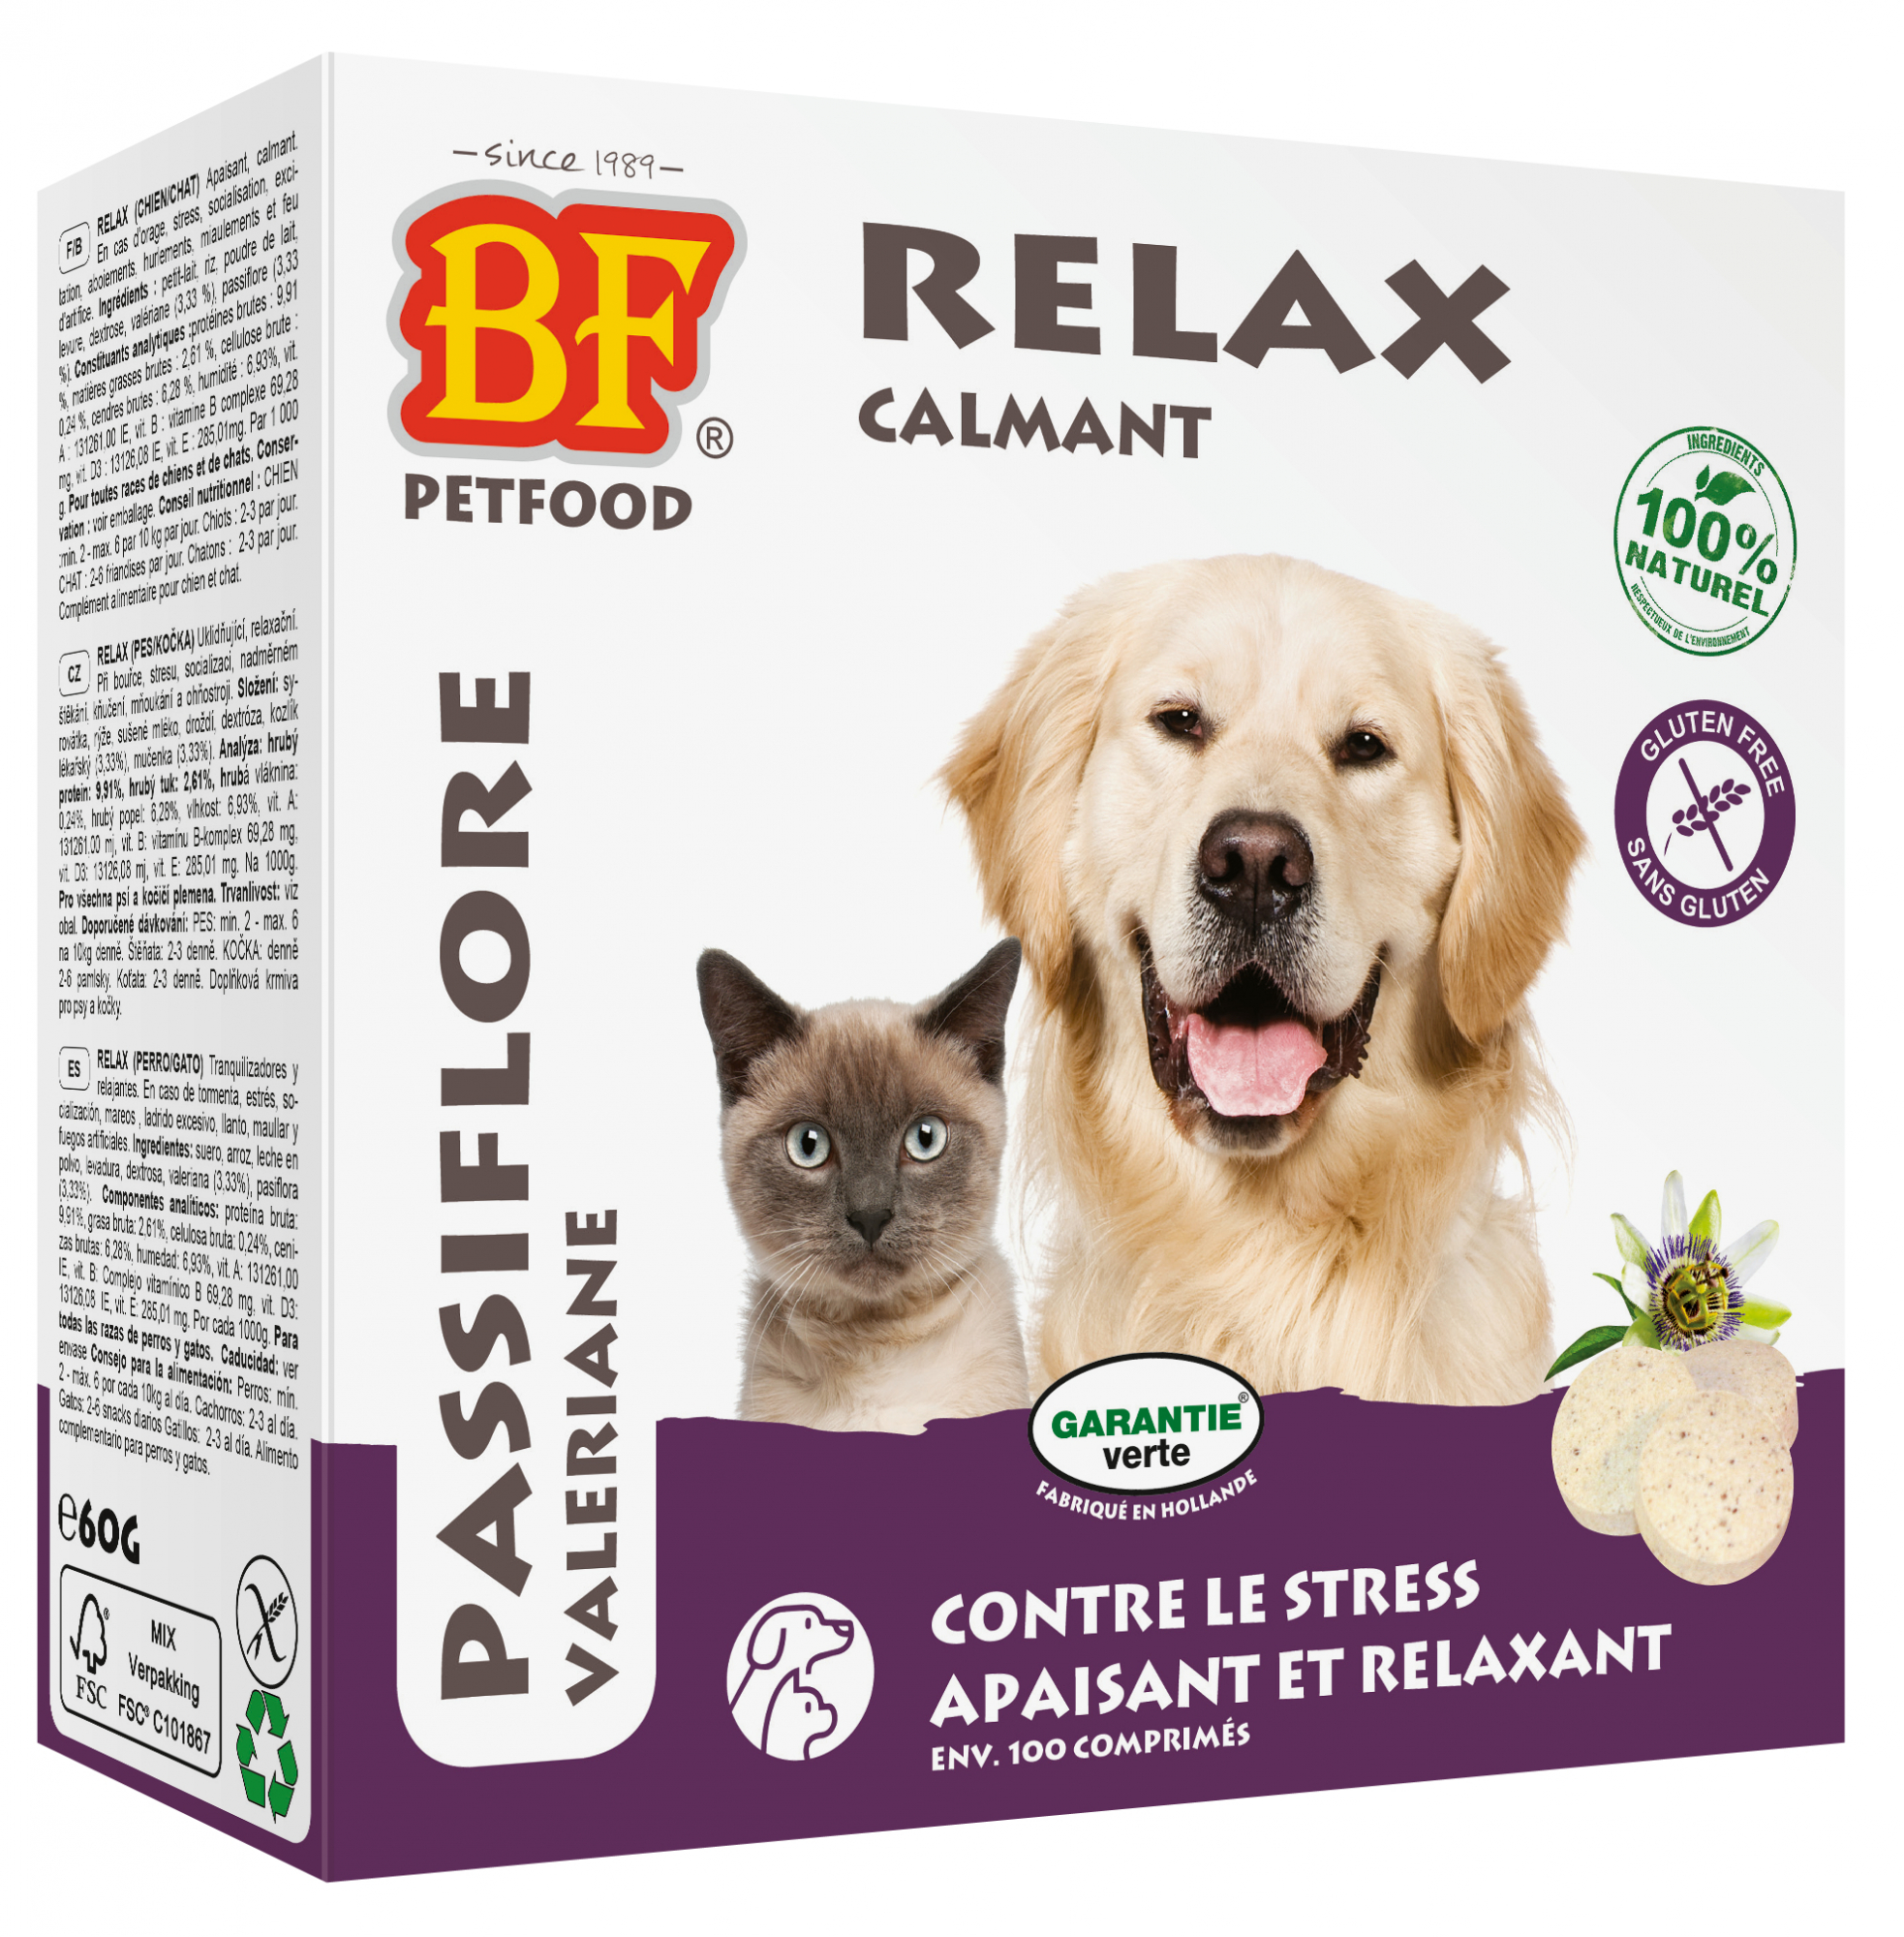  BF PETFOOD - BIOFOOD Comprimidos Relaxantes d'origem Natural para Cão e Gato